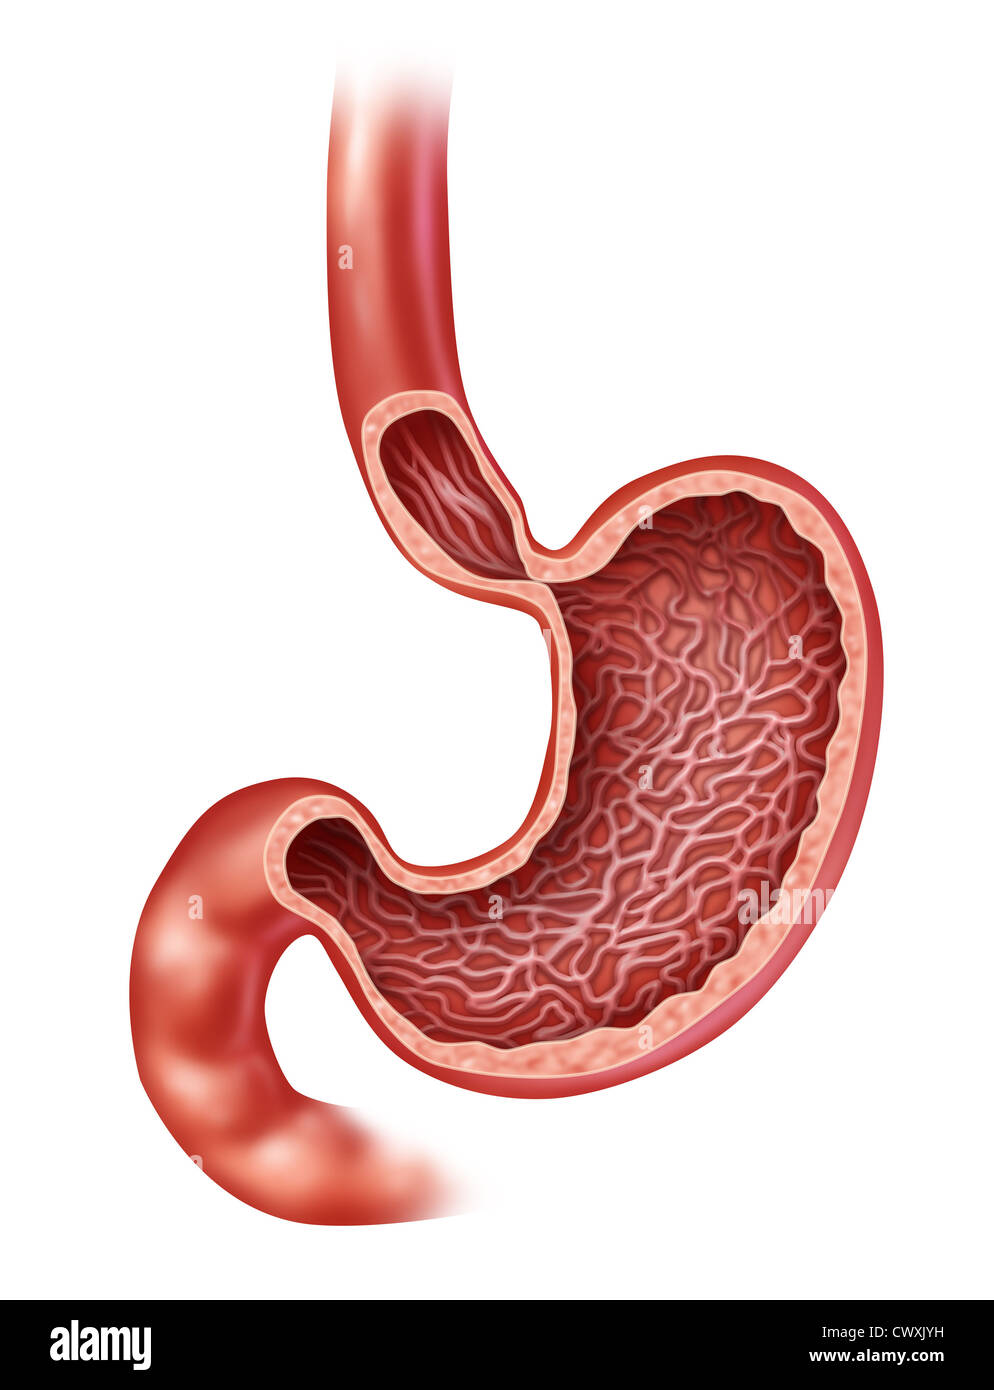 Les droits de l'estomac anatomie de l'organe digestif interne avec une section médicale montrant l'intérieur de la partie du corps qui digère les aliments avec des jus gastriques comme un schéma de soins de santé illustration sur un fond blanc. Banque D'Images